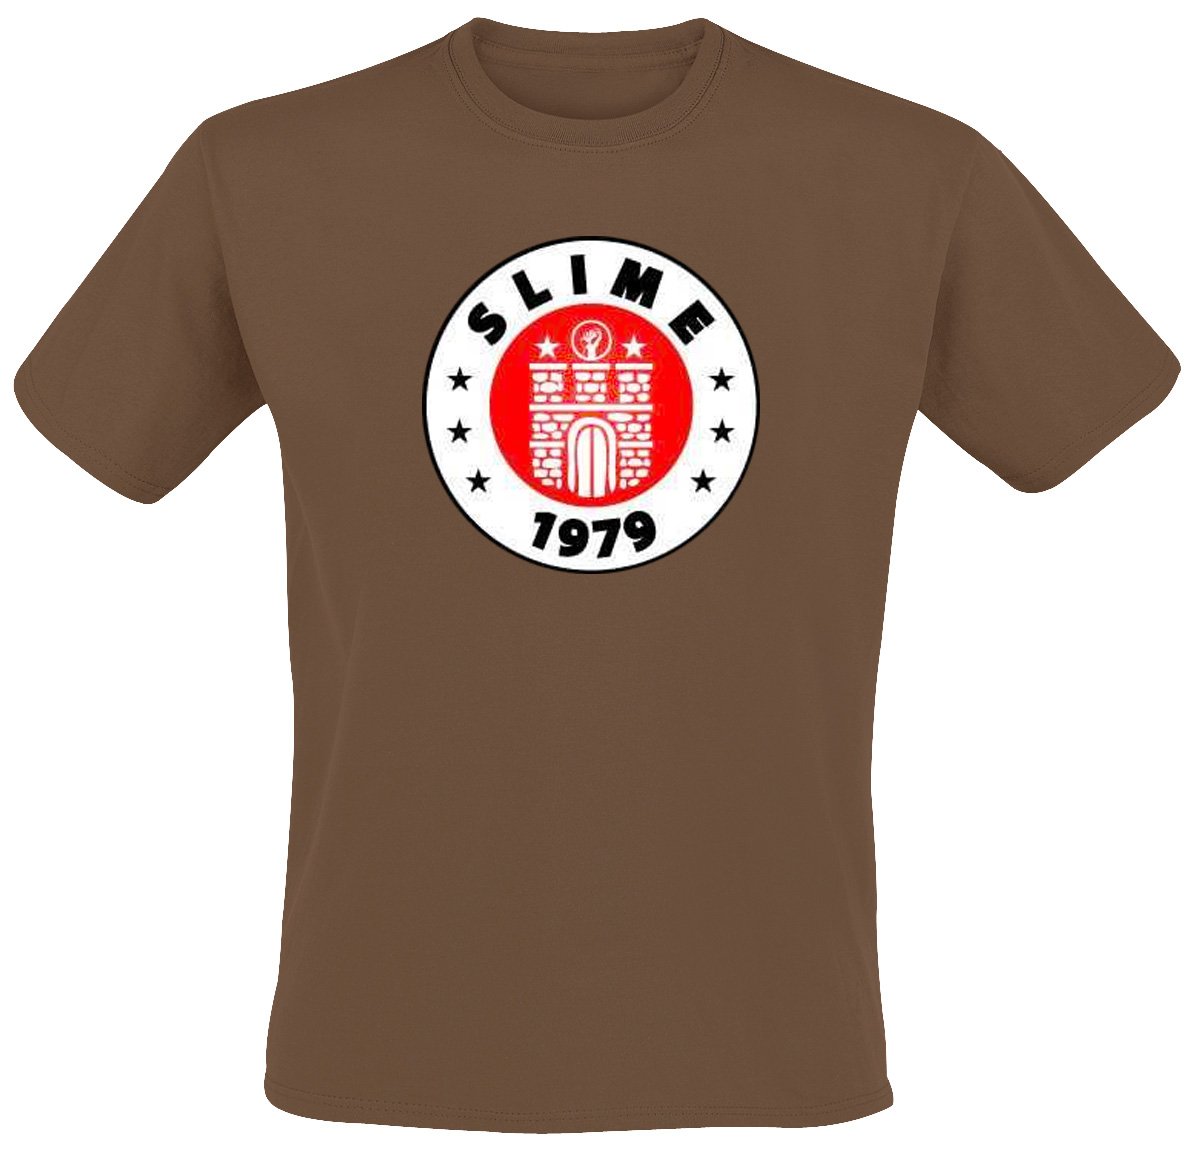 Slime - St. Pauli T-Shirt, braun, Grösse M